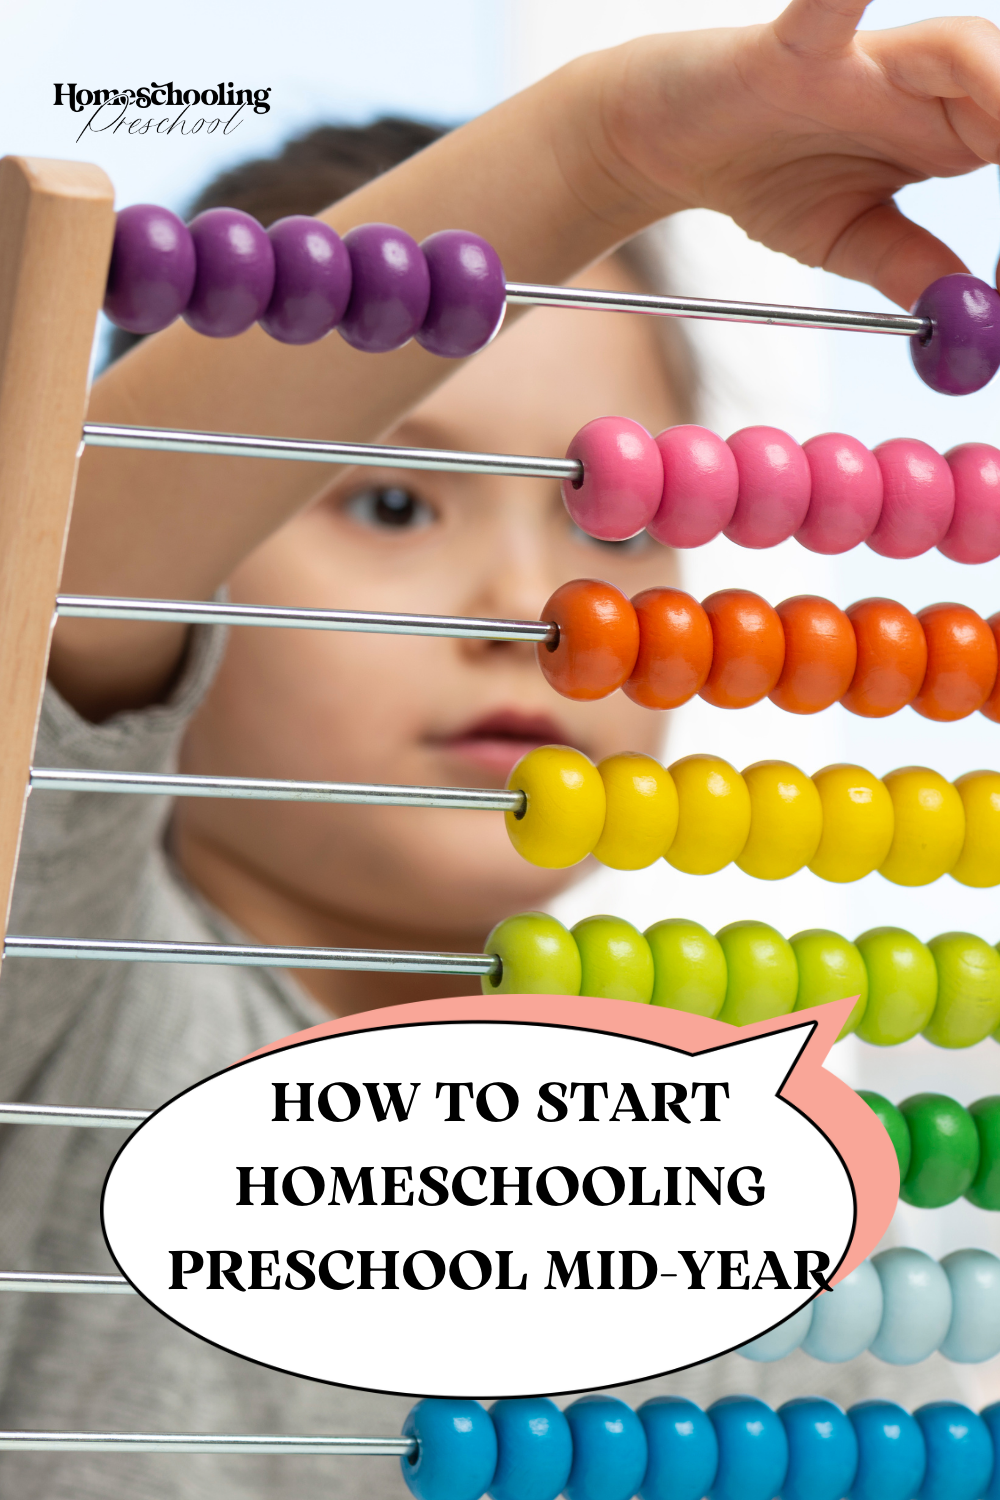 How to Start Homeschooling Preschool Mid-Year